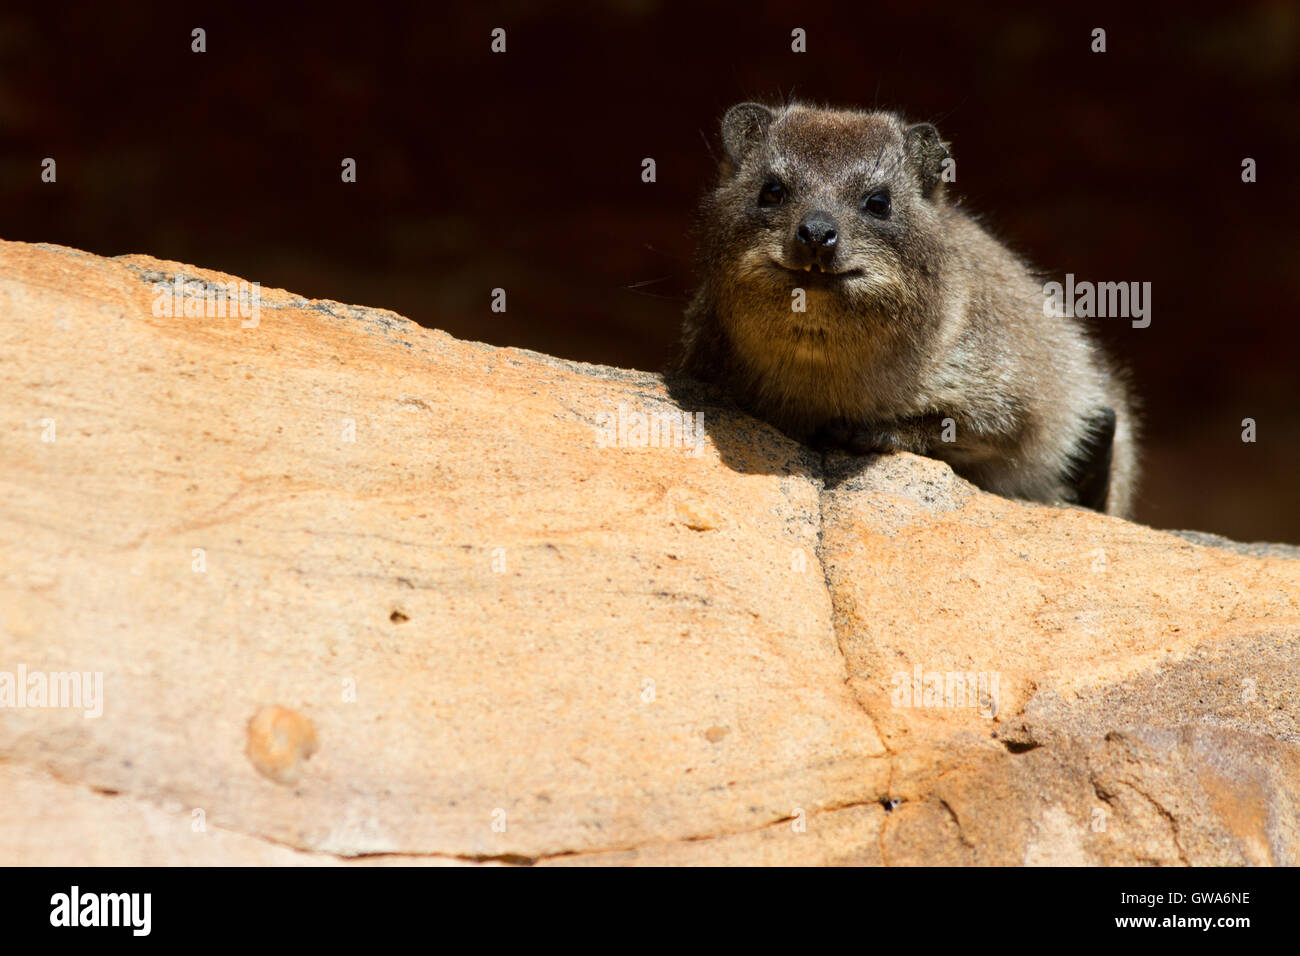 The dassie rat (Petromus typicus), South Africa Stock Photo